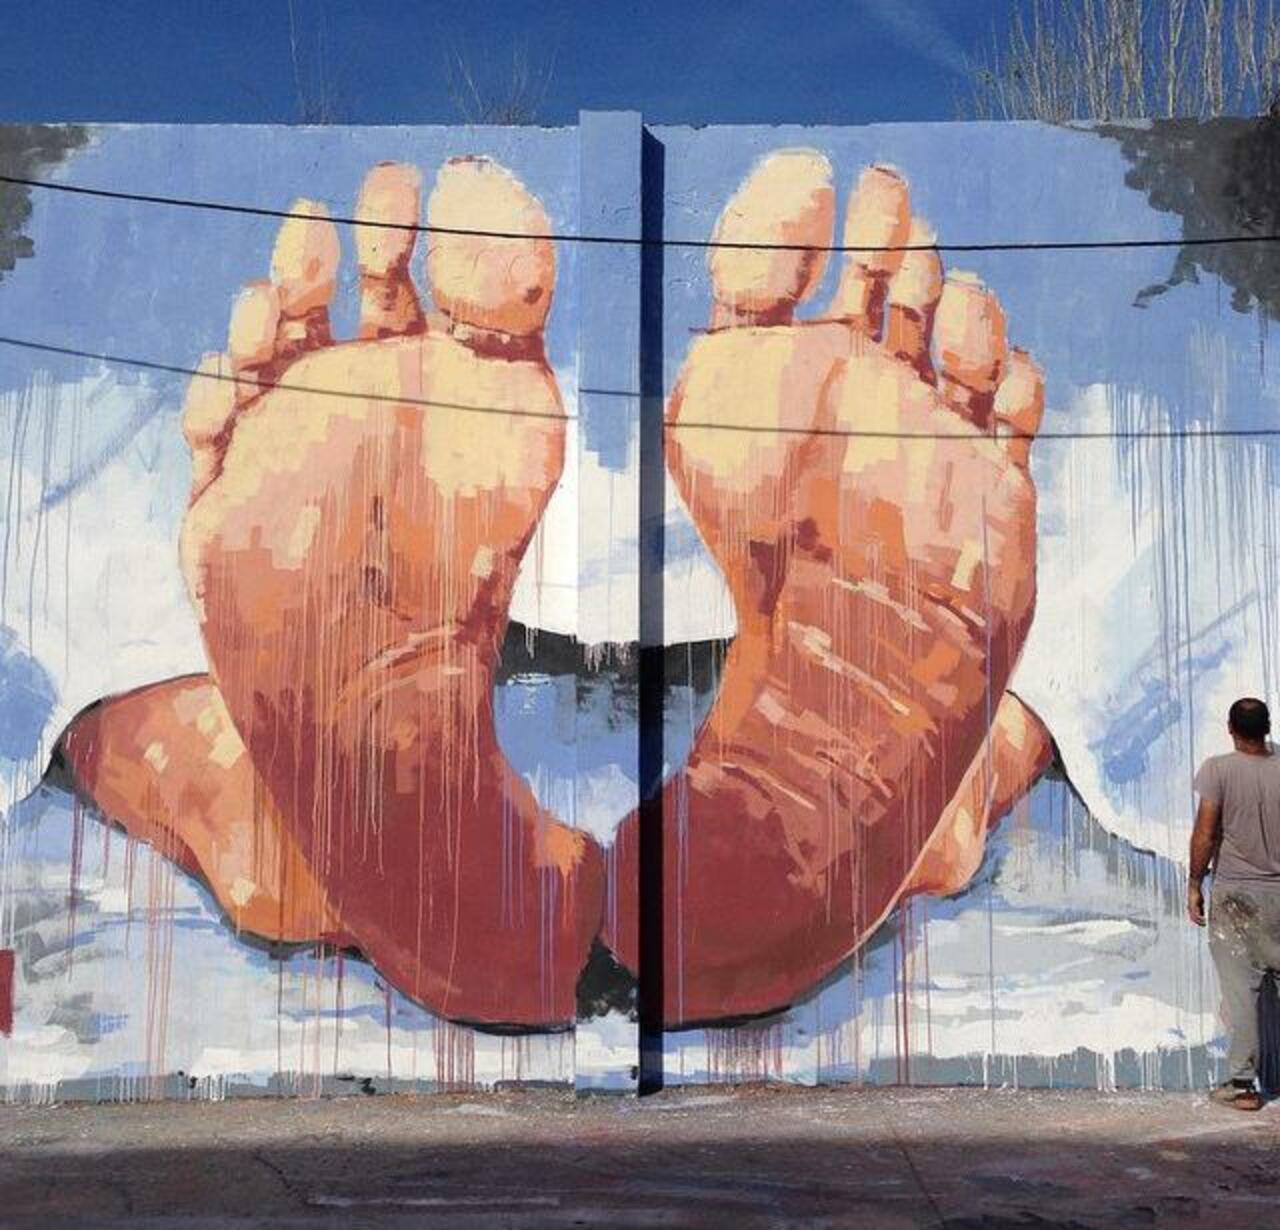 RT @palectric: New Street Art by the artist ‘ManuManu’ 

#art #arte #graffiti #streetart http://t.co/yhDsiiozft